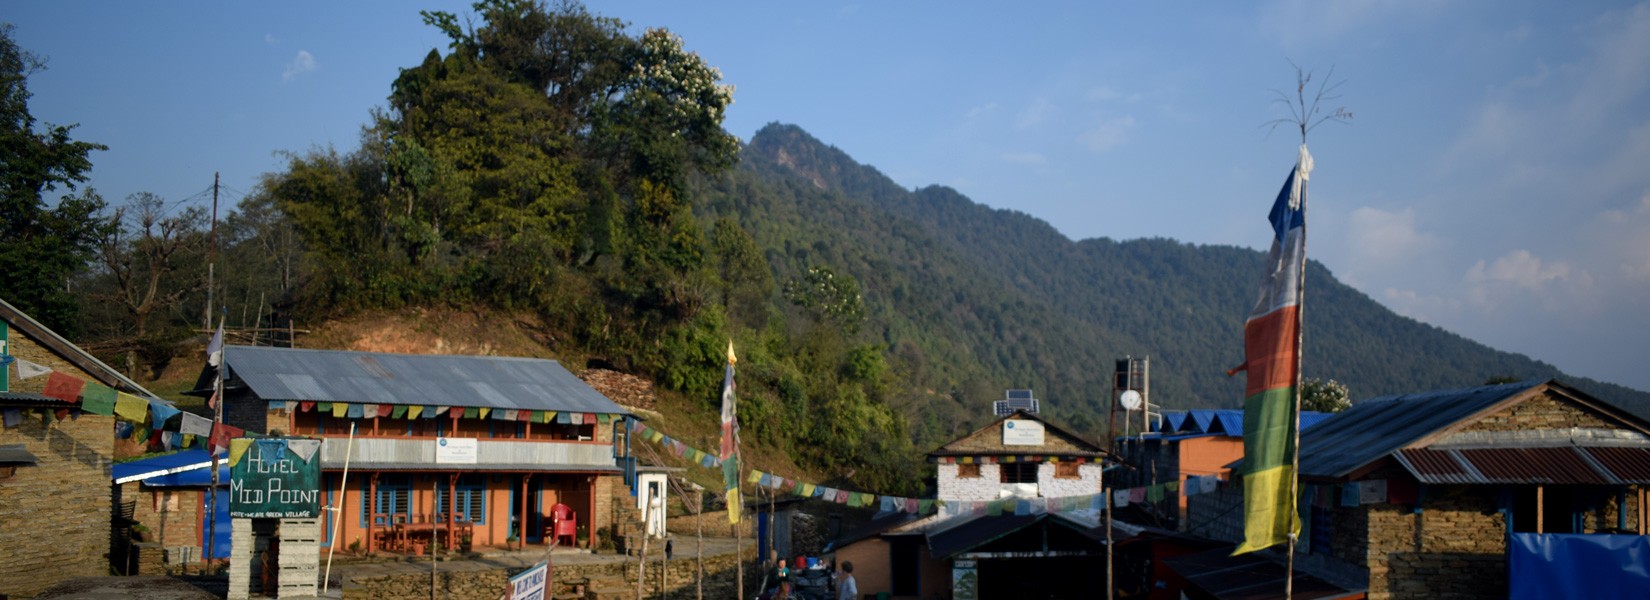 Bhanjyang Village in Panchase